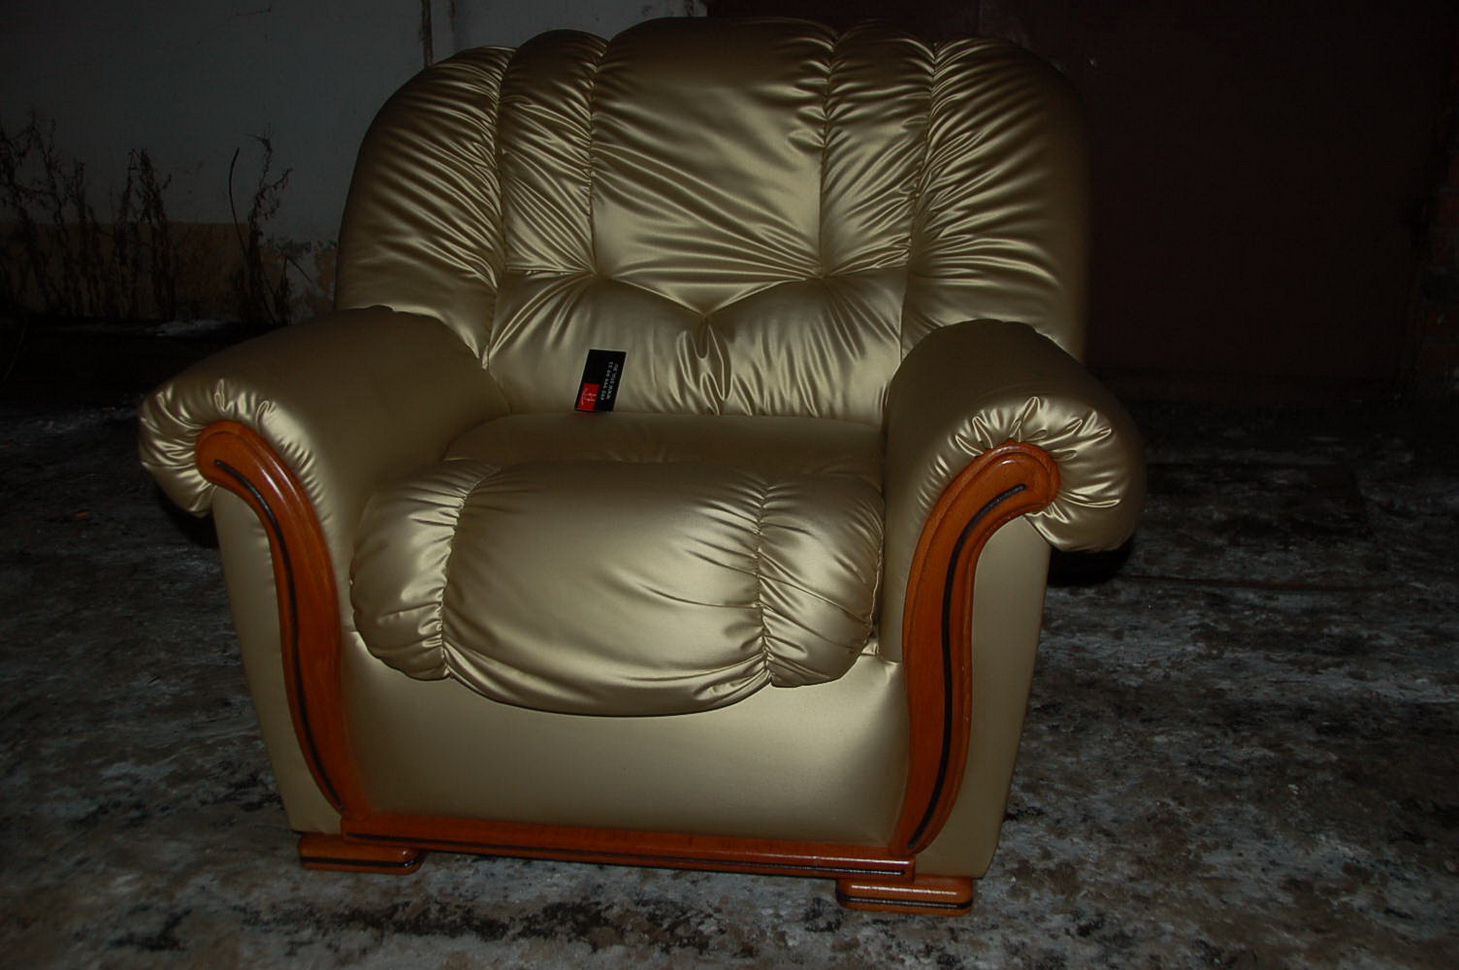 Орехово-Зуево - реставрация стульев, материал антивандальные ткани